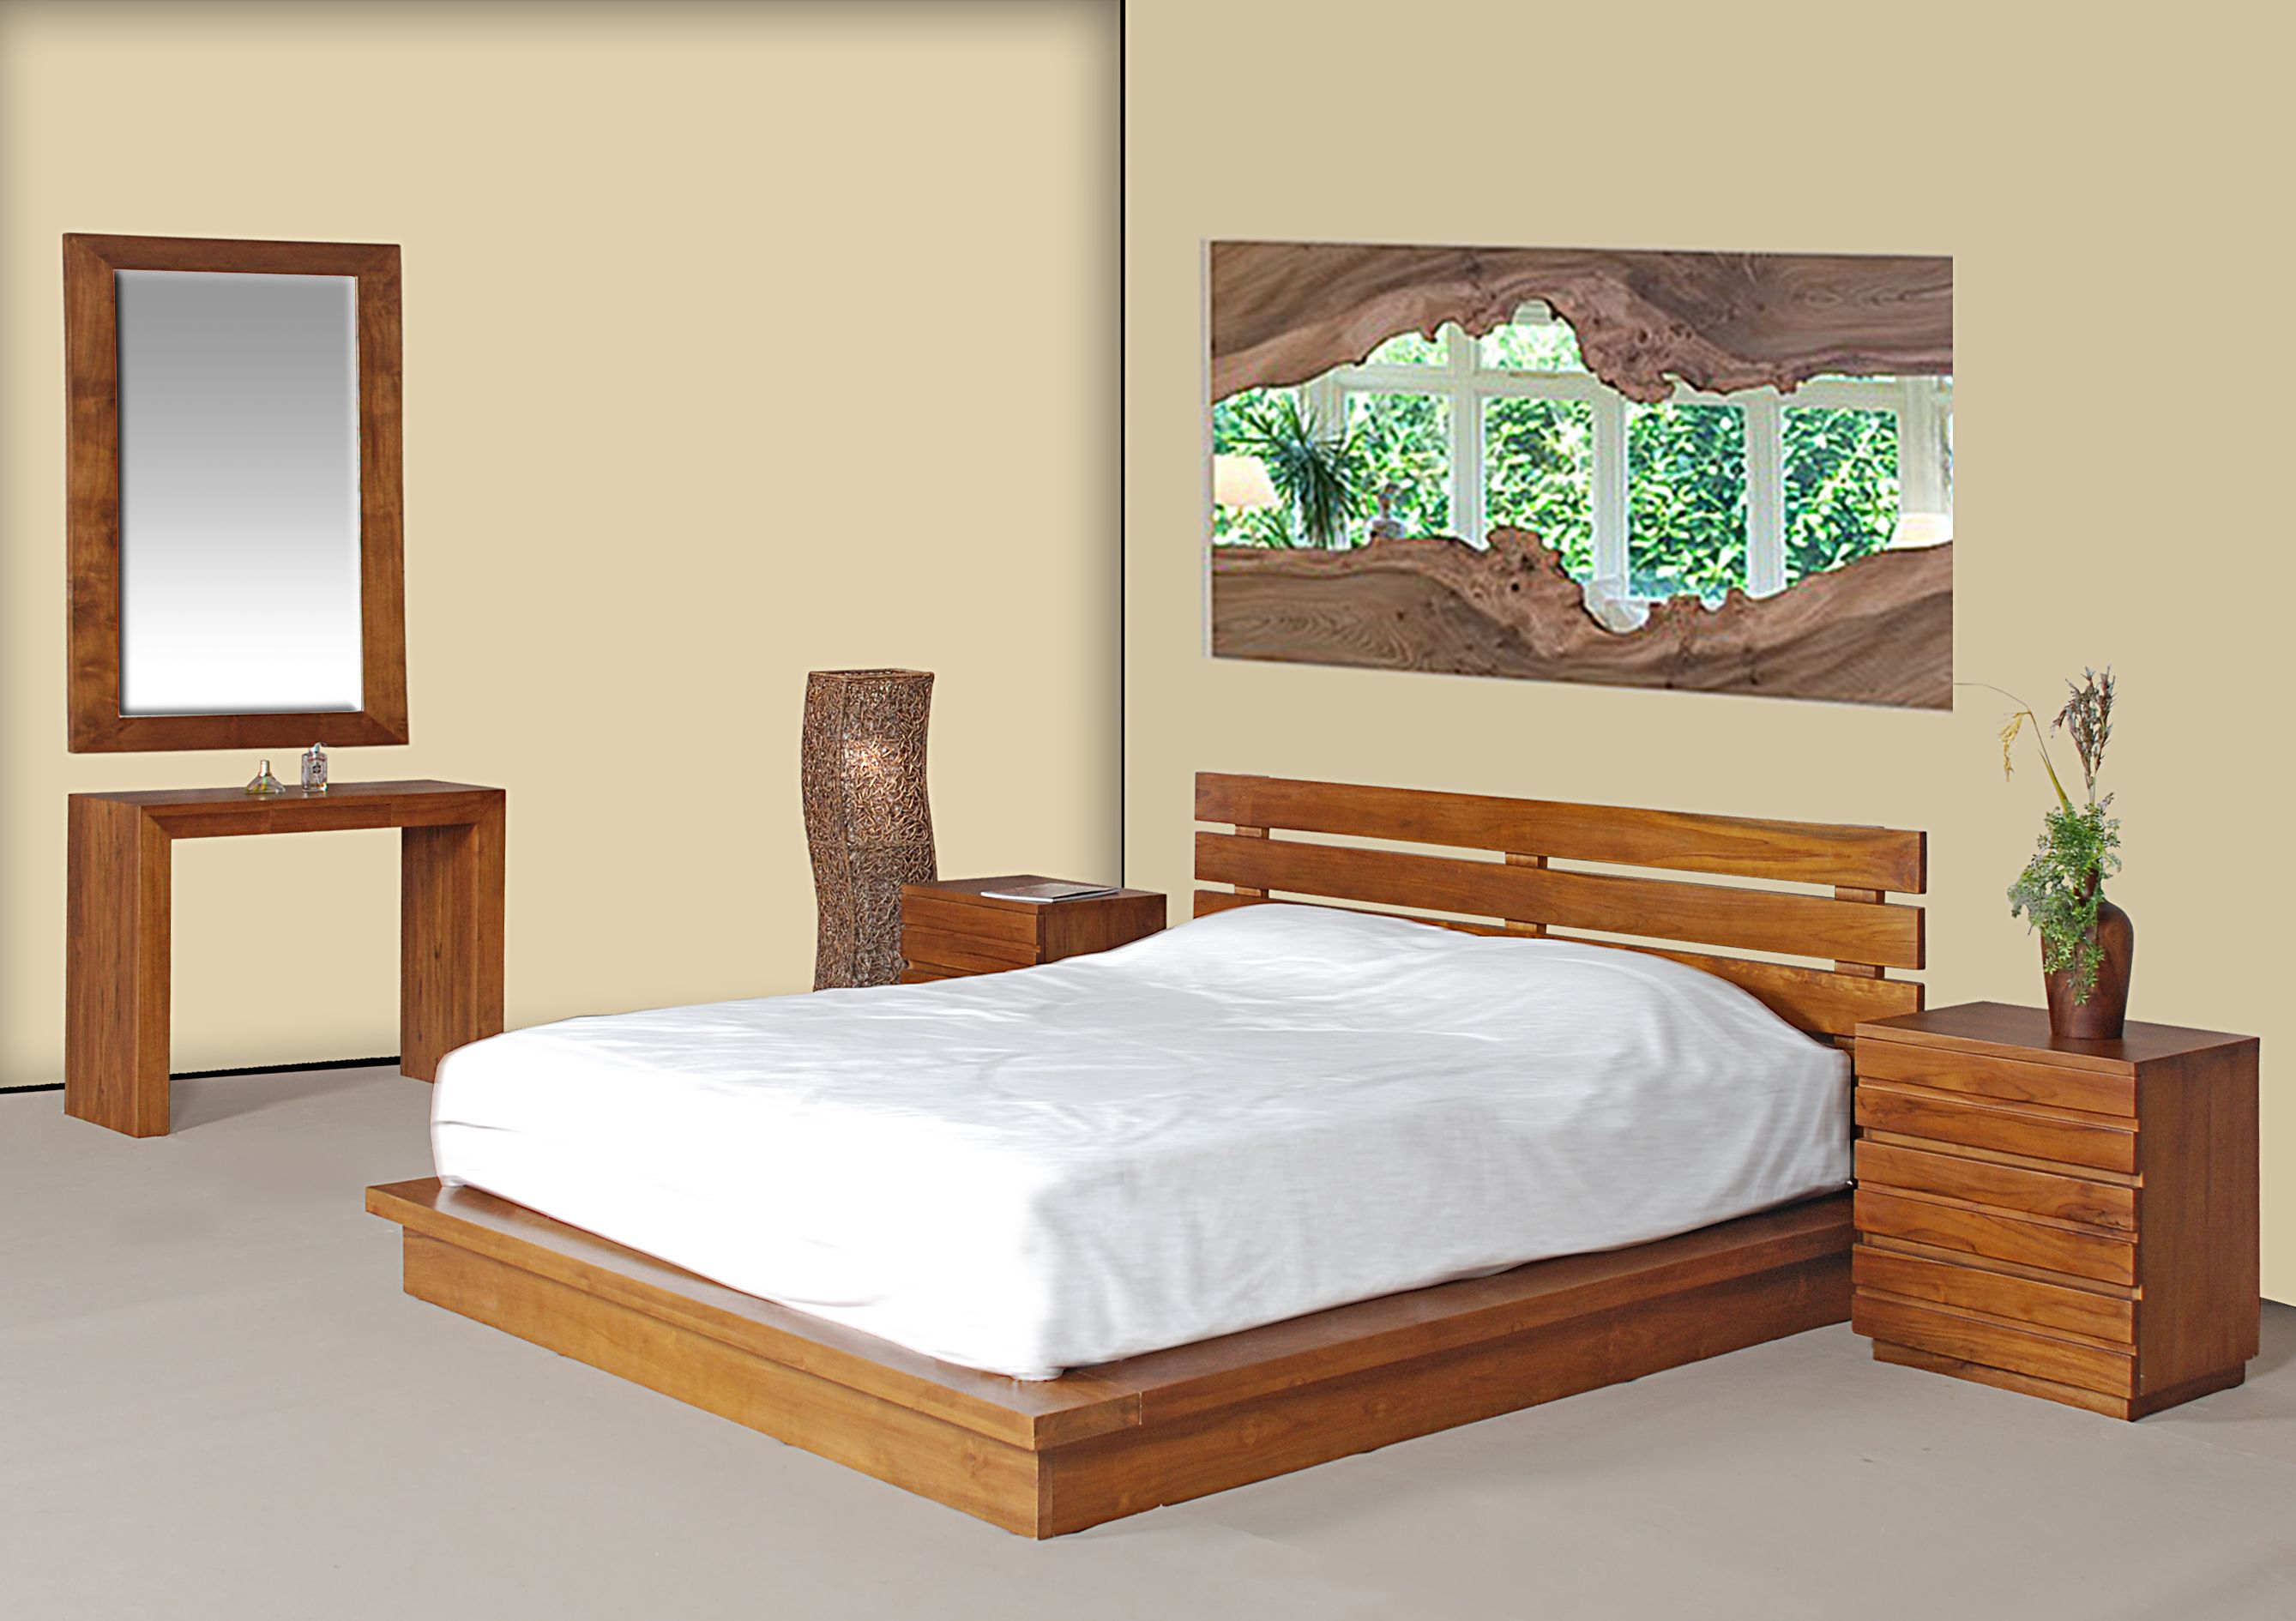 Teak Wood Bedroom Set In Malaysia 03 80820341 Teak Wood Bedroom regarding dimensions 2677 X 1890